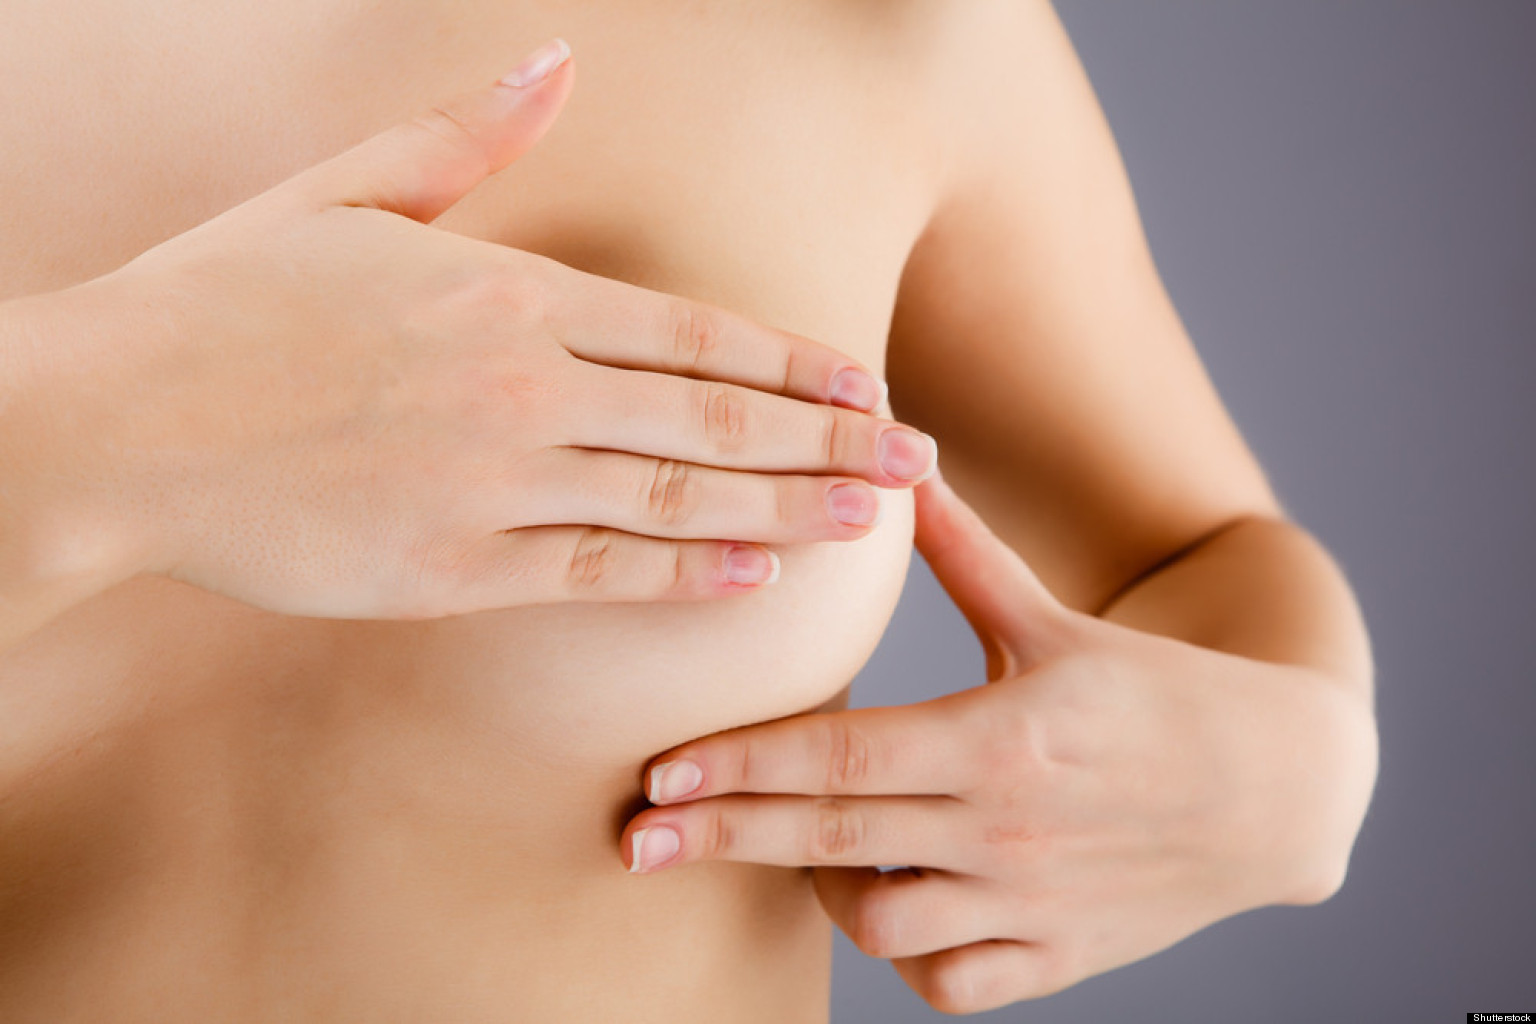 Фото формирования женской груди